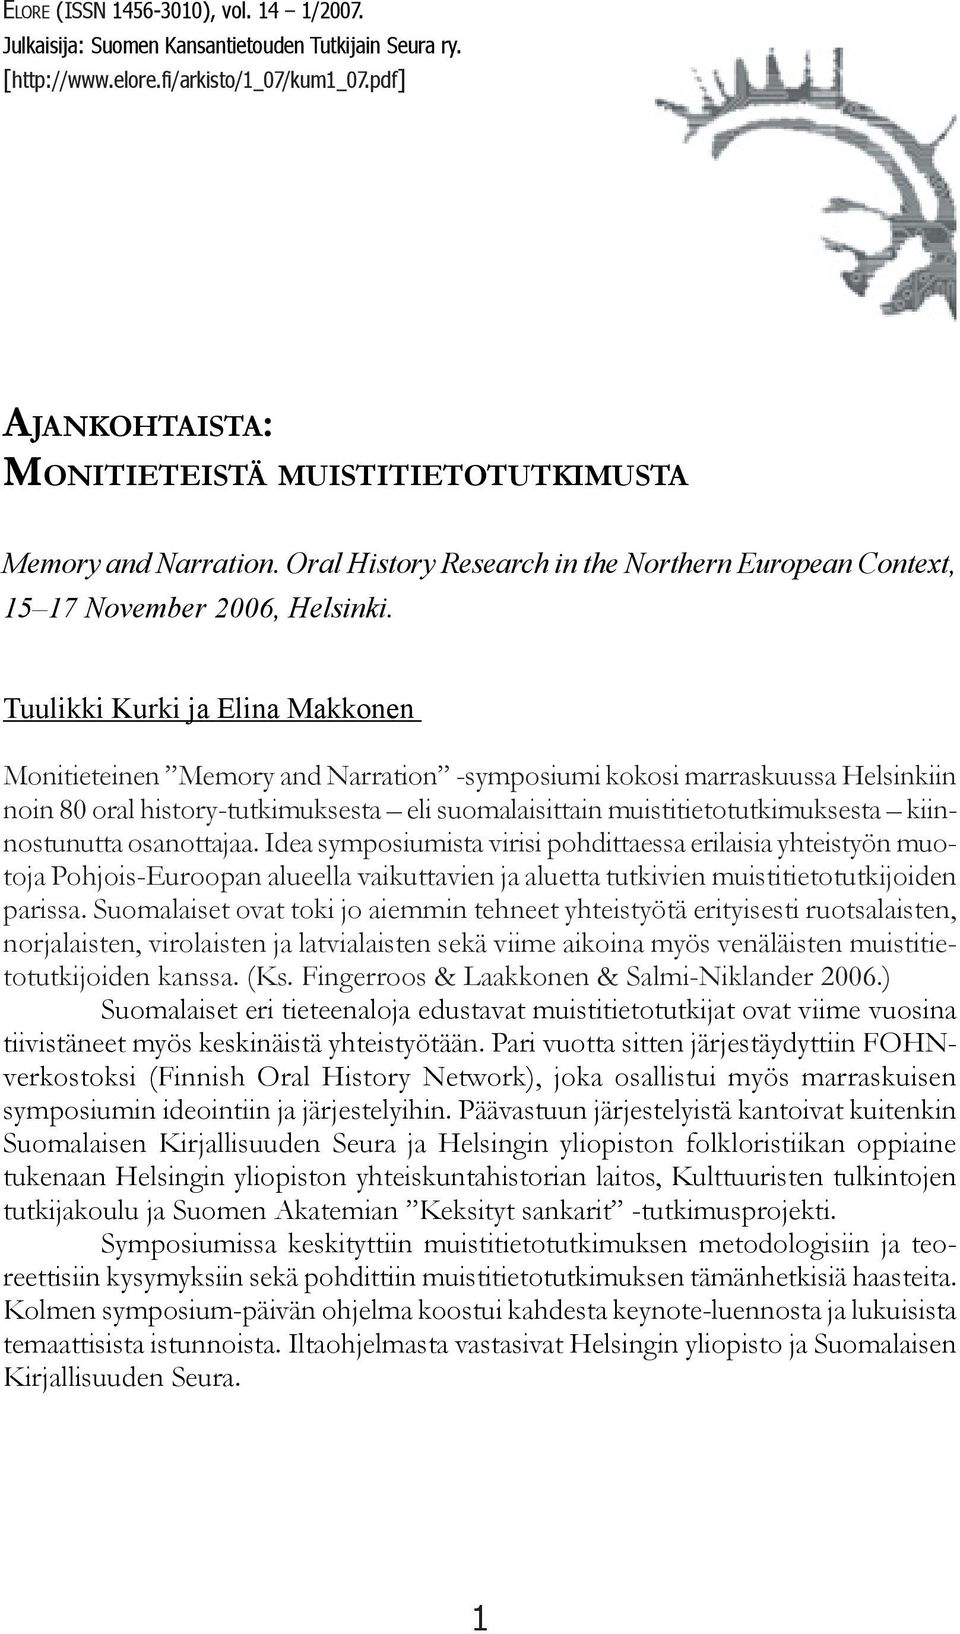 Tuulikki Kurki ja Elina Makkonen Monitieteinen Memory and Narration -symposiumi kokosi marraskuussa Helsinkiin noin 80 oral history-tutkimuksesta eli suomalaisittain muistitietotutkimuksesta